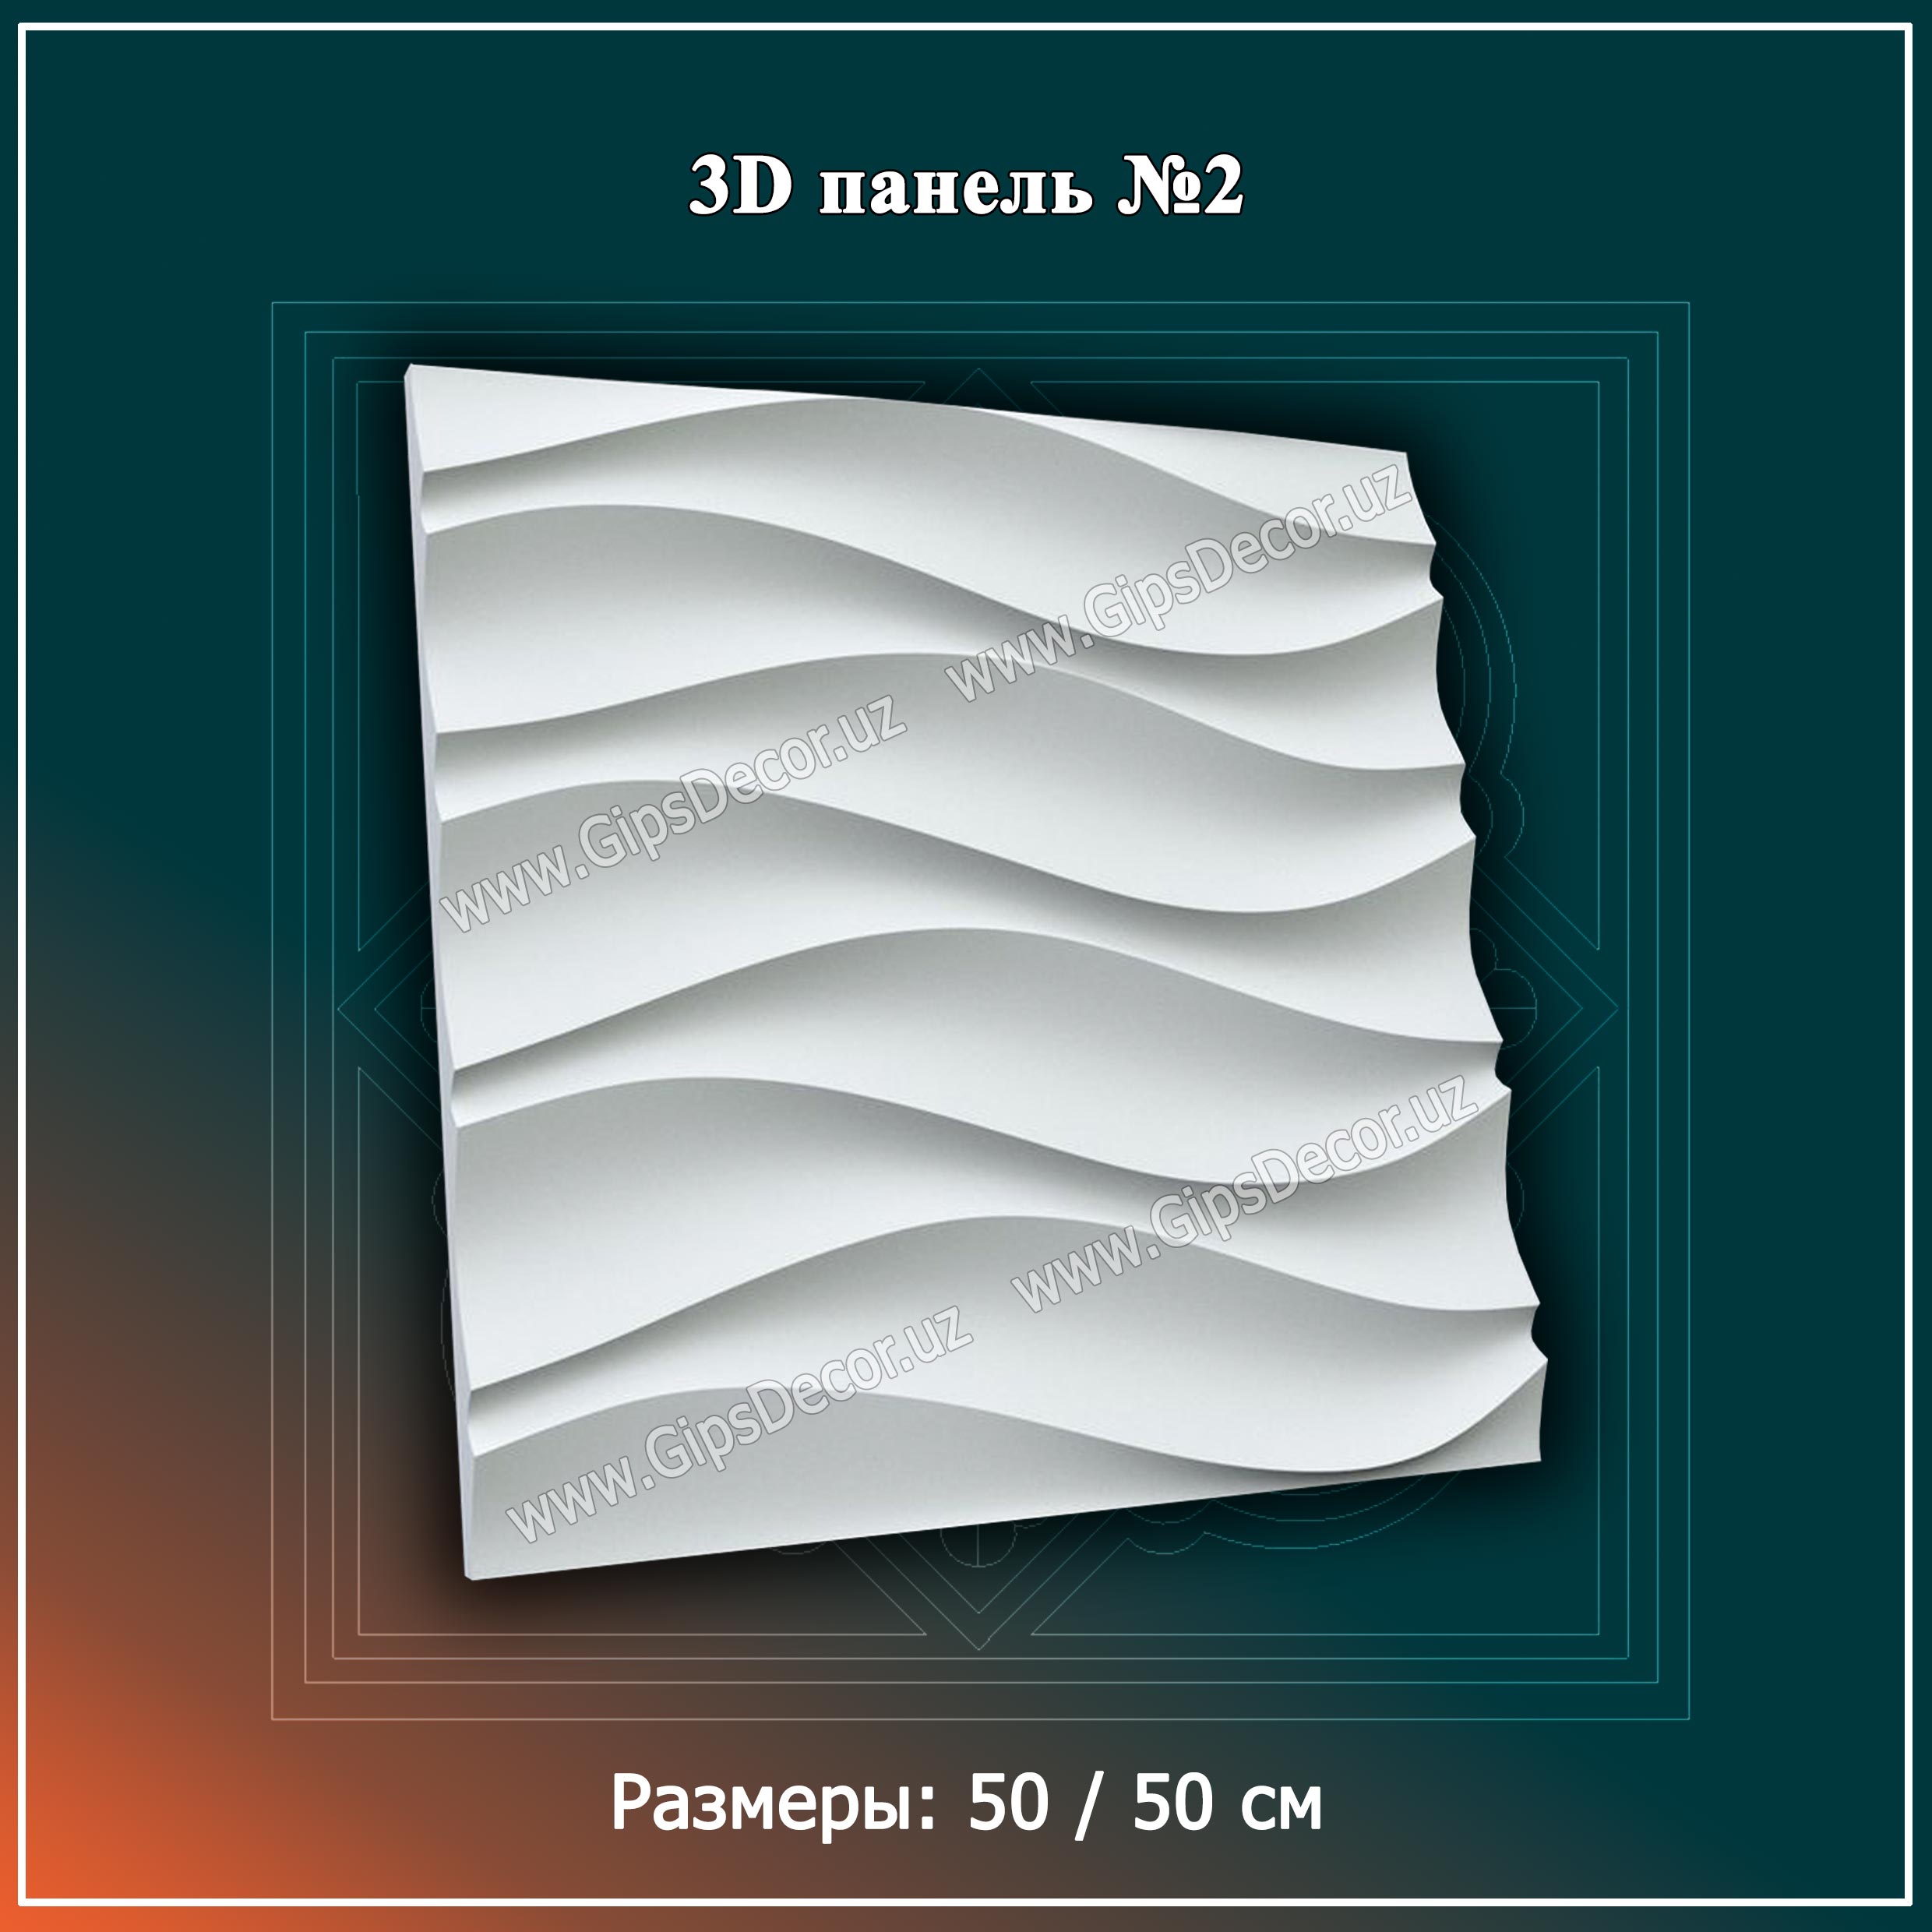 3D Панель №2